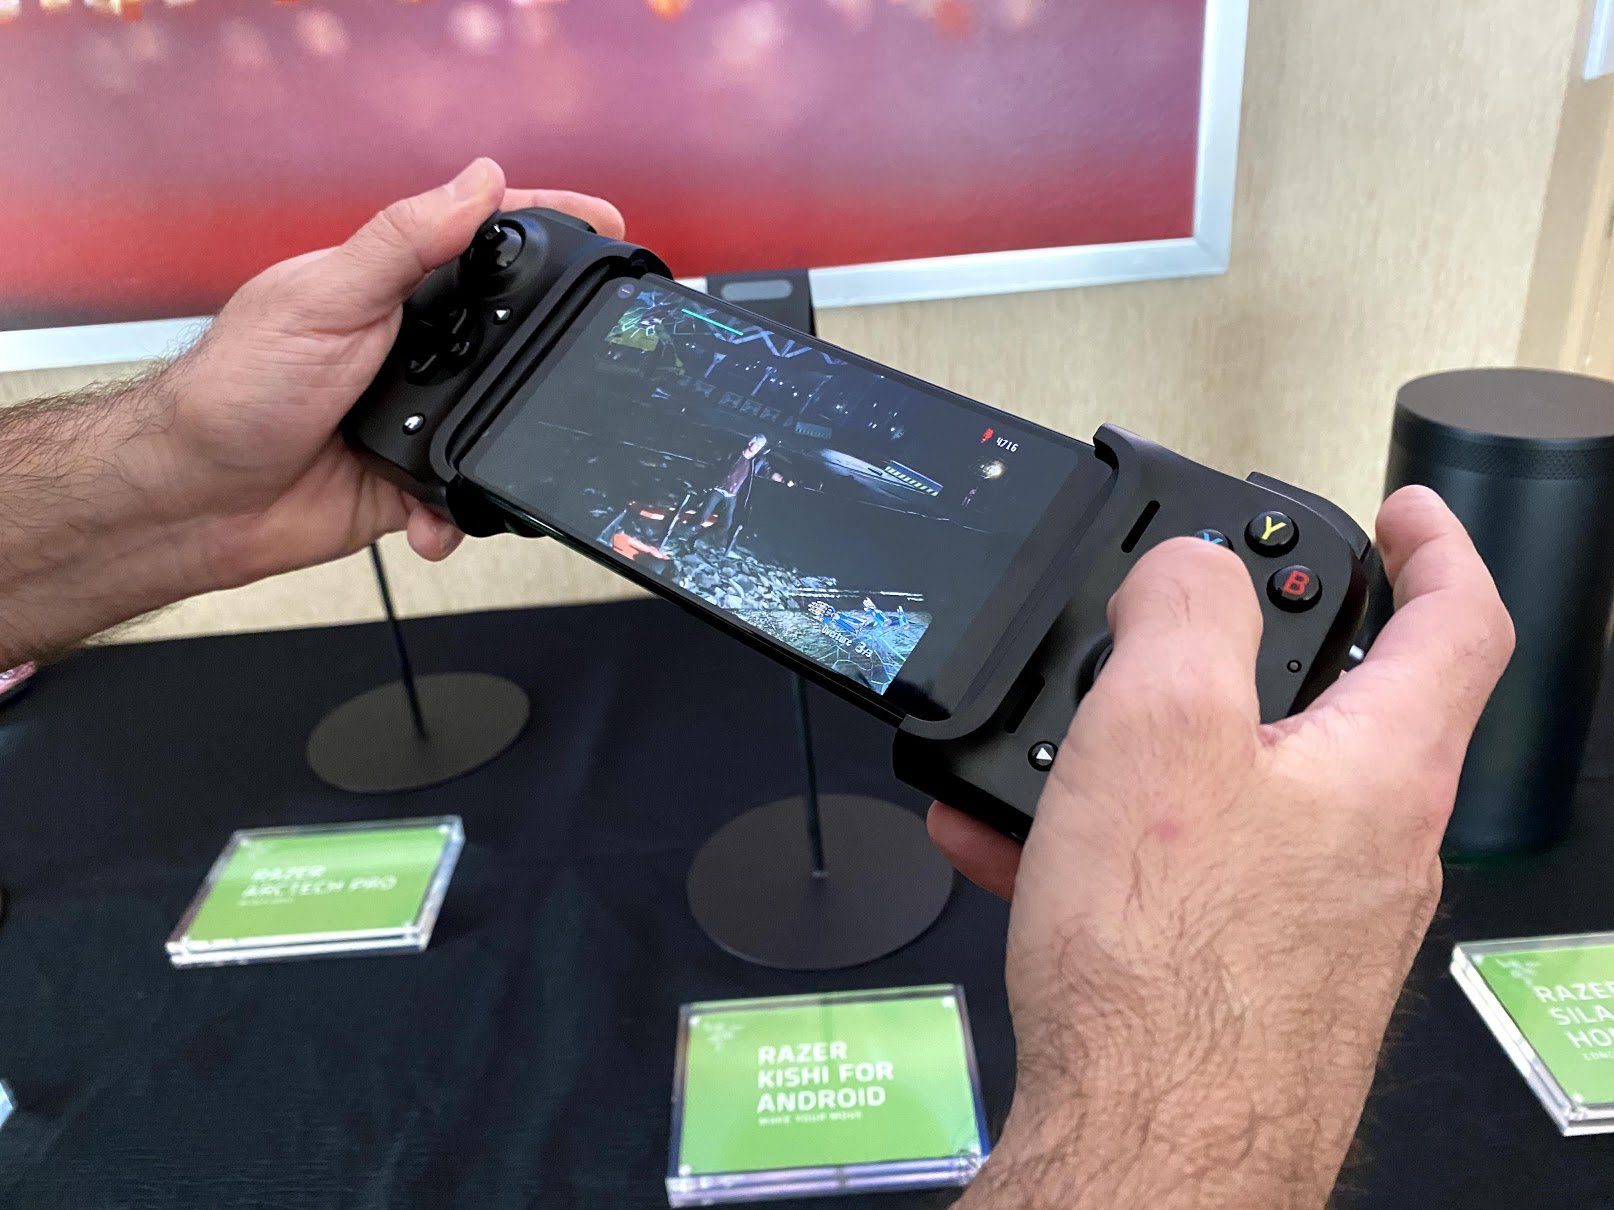 Razer announces new Razer Kishi mobile gaming controller at CES 2020